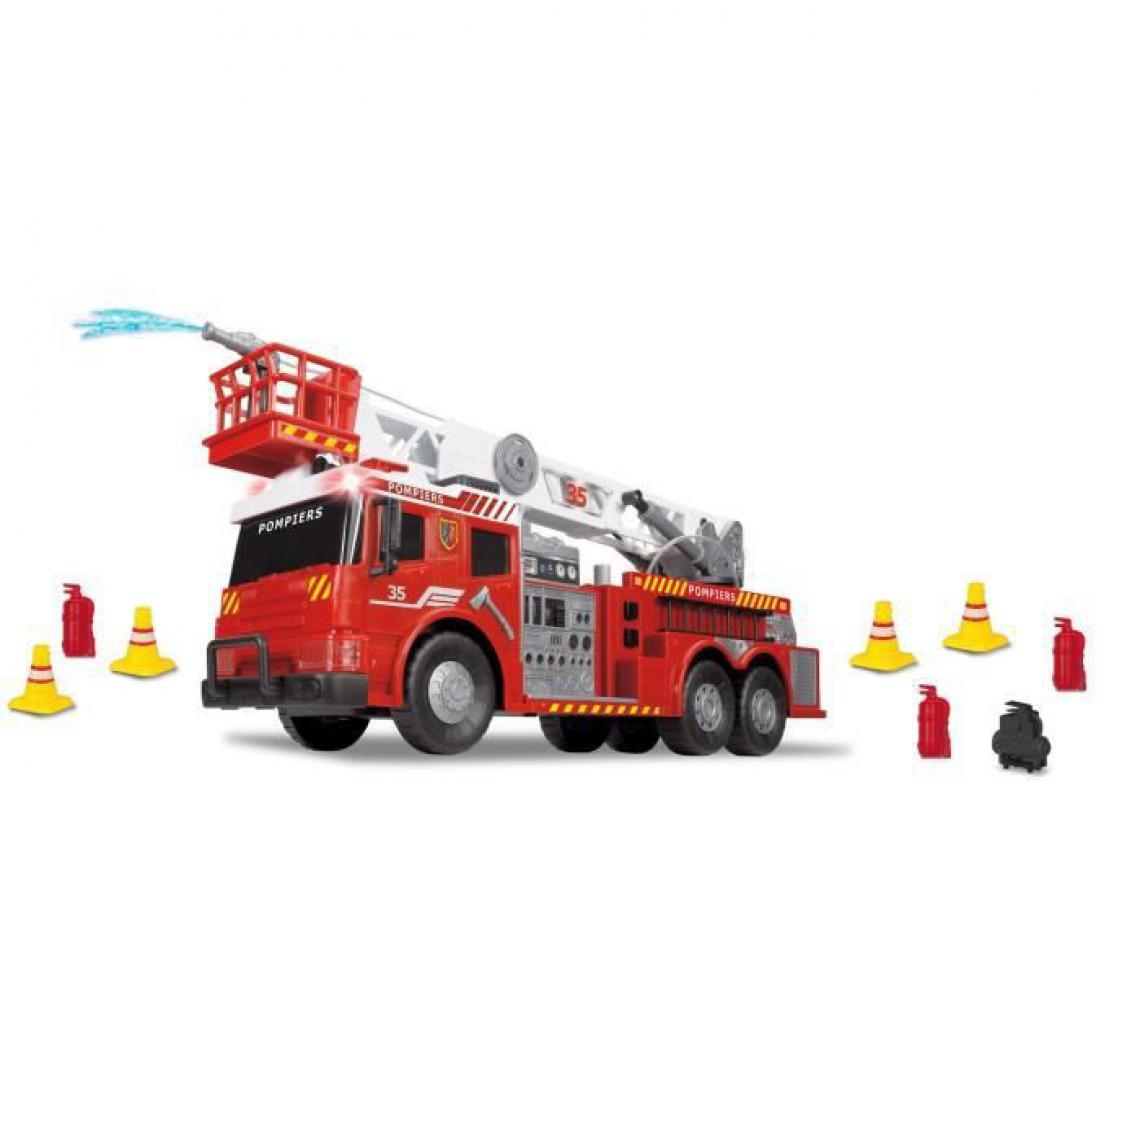 Icaverne - UNIVERS MINIATURE - HABITATION MINIATURE - GARAGE MINIATURE DICKIE - Camion pompiers filoguidé 62cm rouge - Jeux éducatifs